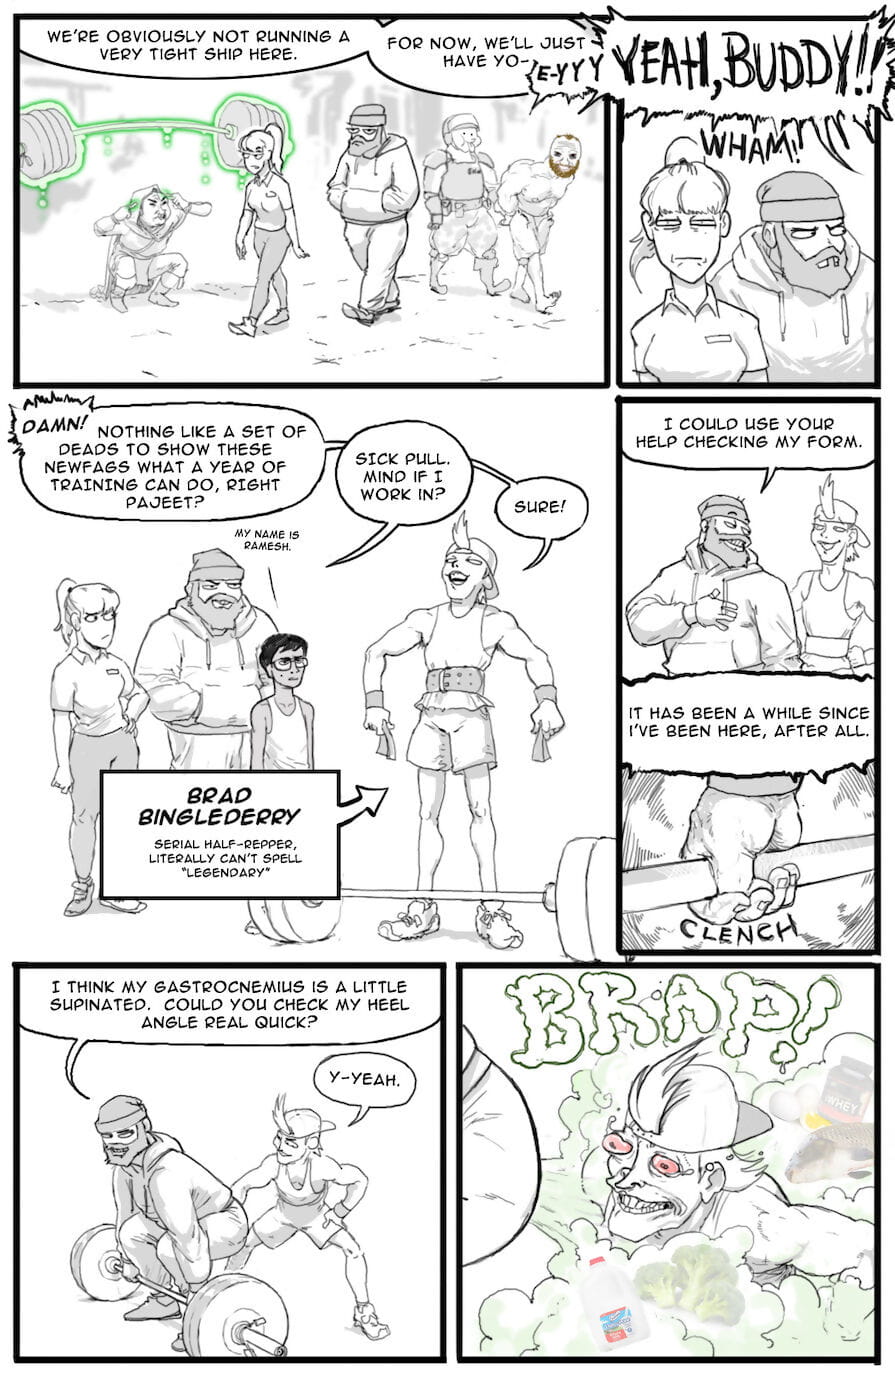 /fit/ Comics - part 3 page 1